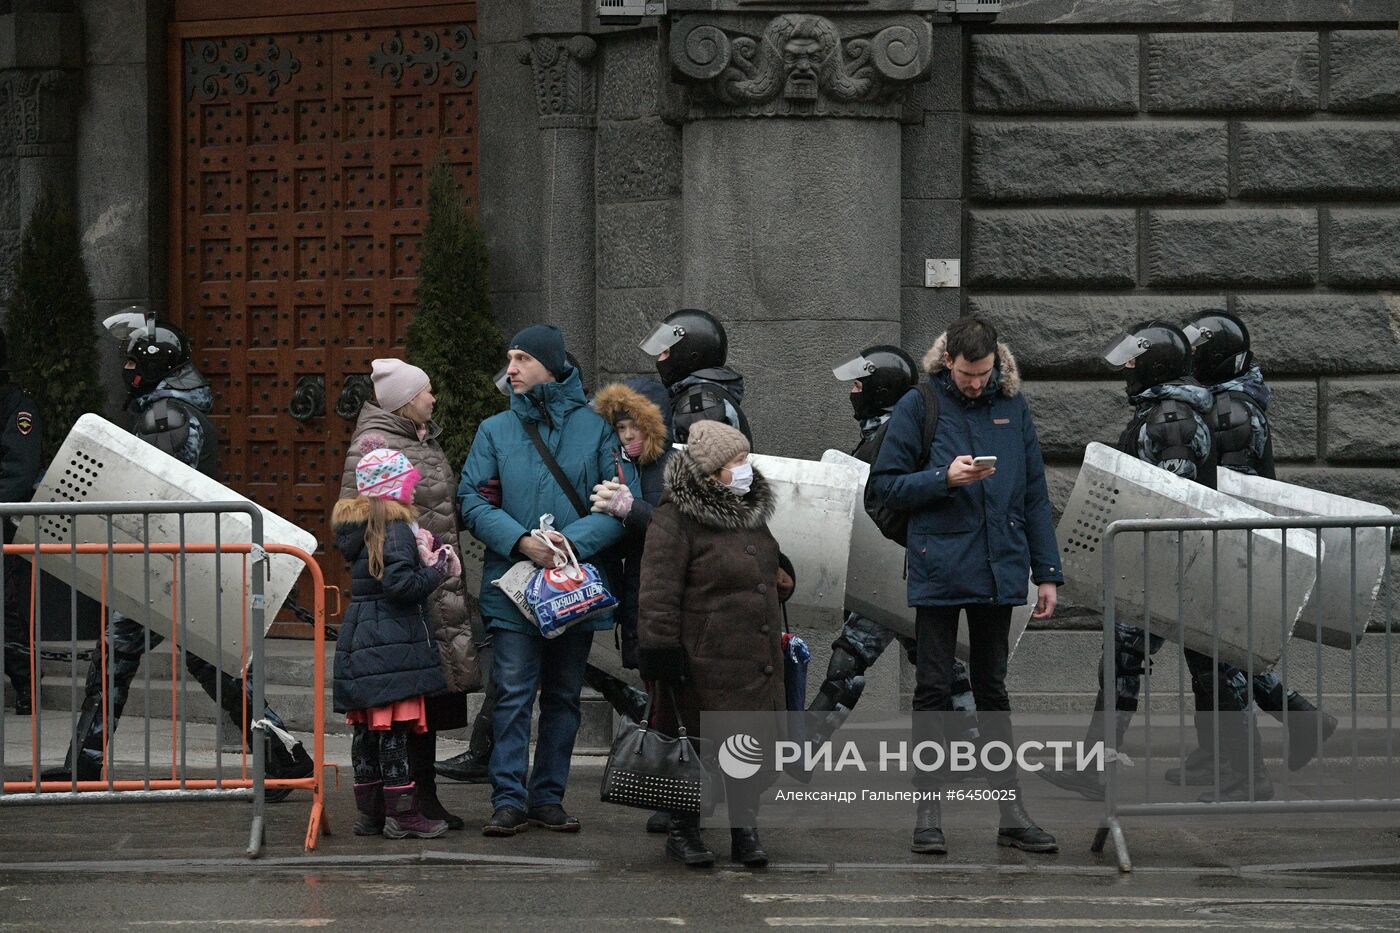 Несанкционированные акции протеста сторонников А. Навального